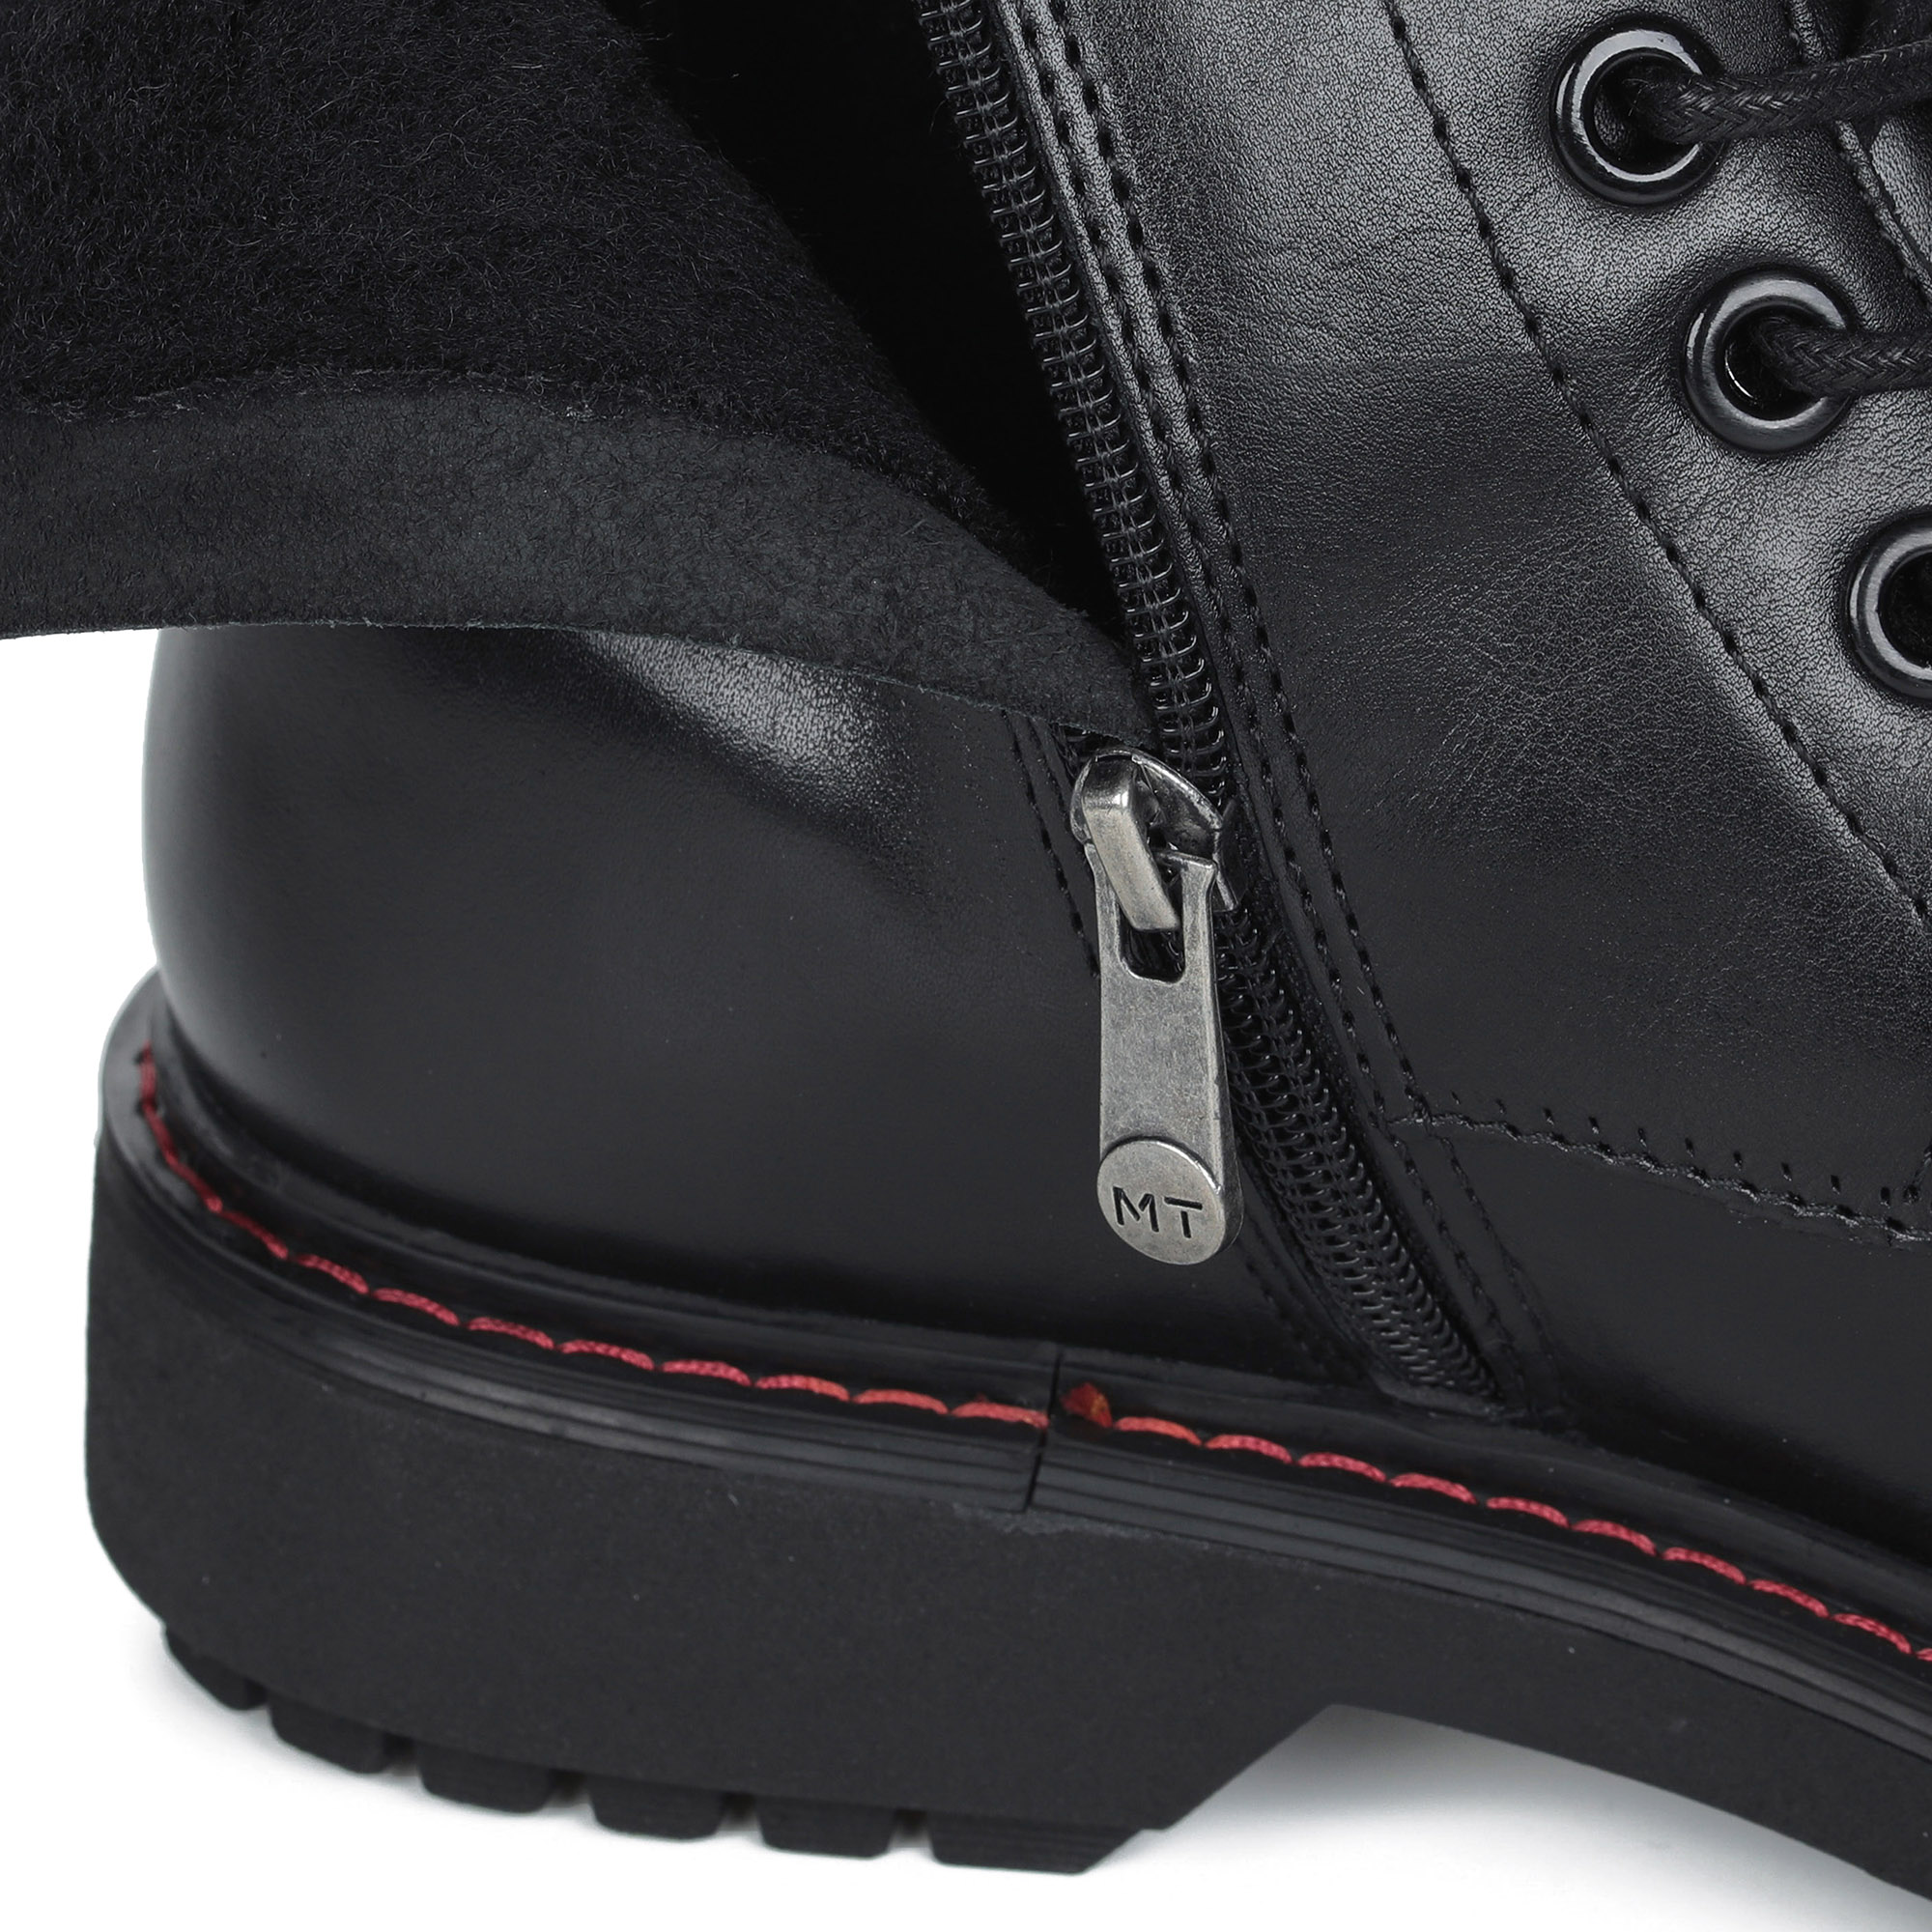 Черные ботинки на шнурках из кожи на подкладке из натуральной шерсти на тракторной подошве MARCO TOZZI PREMIO, размер 38, цвет черный - фото 5